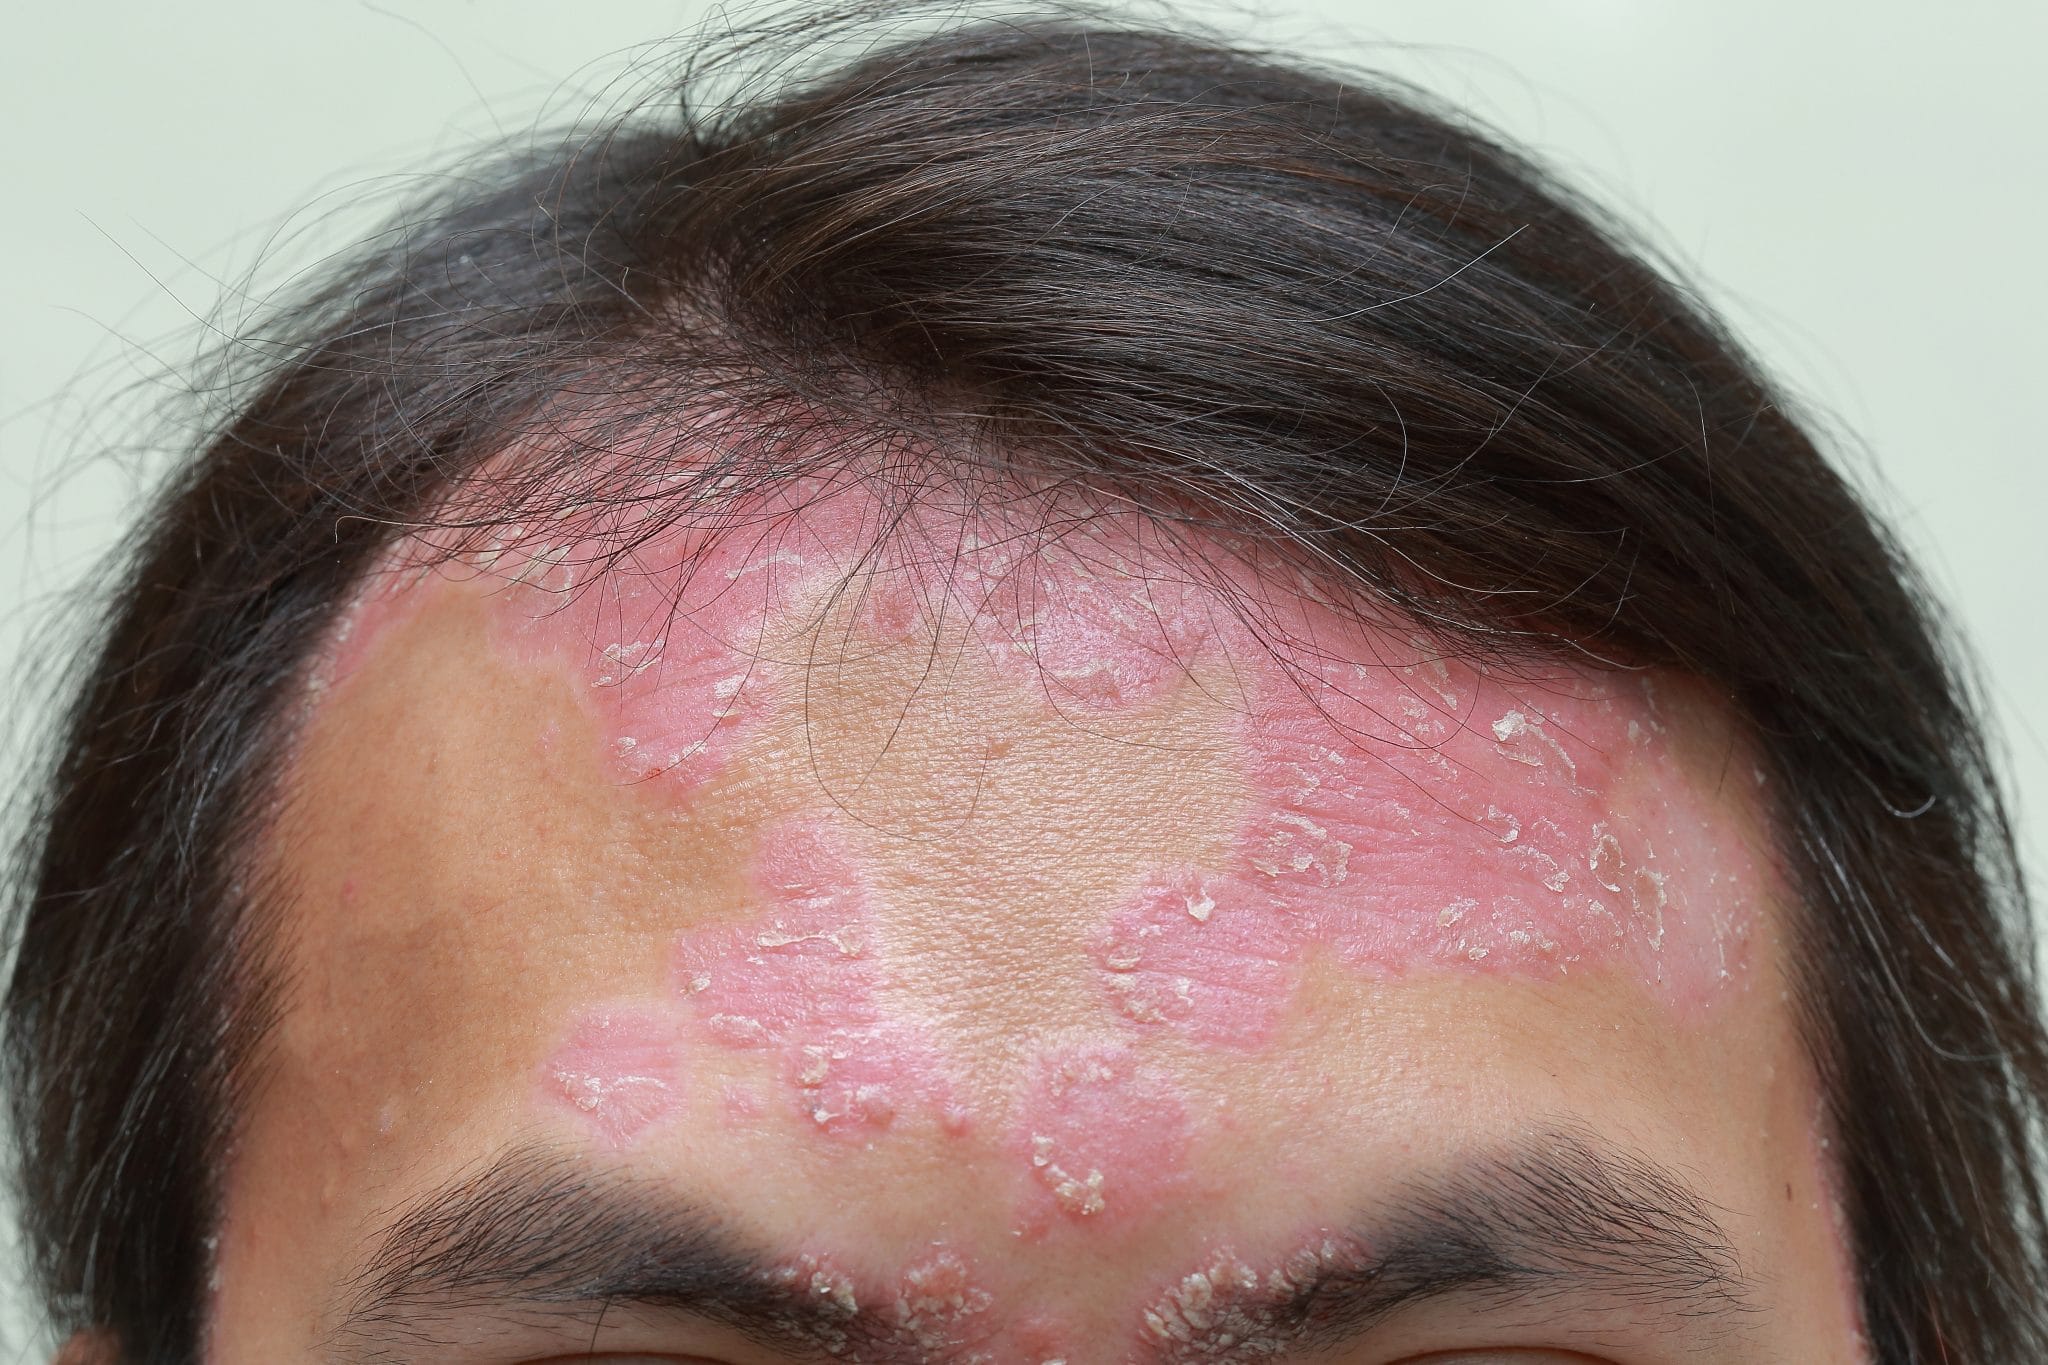 Comment se caractérise le psoriasis du visage ?